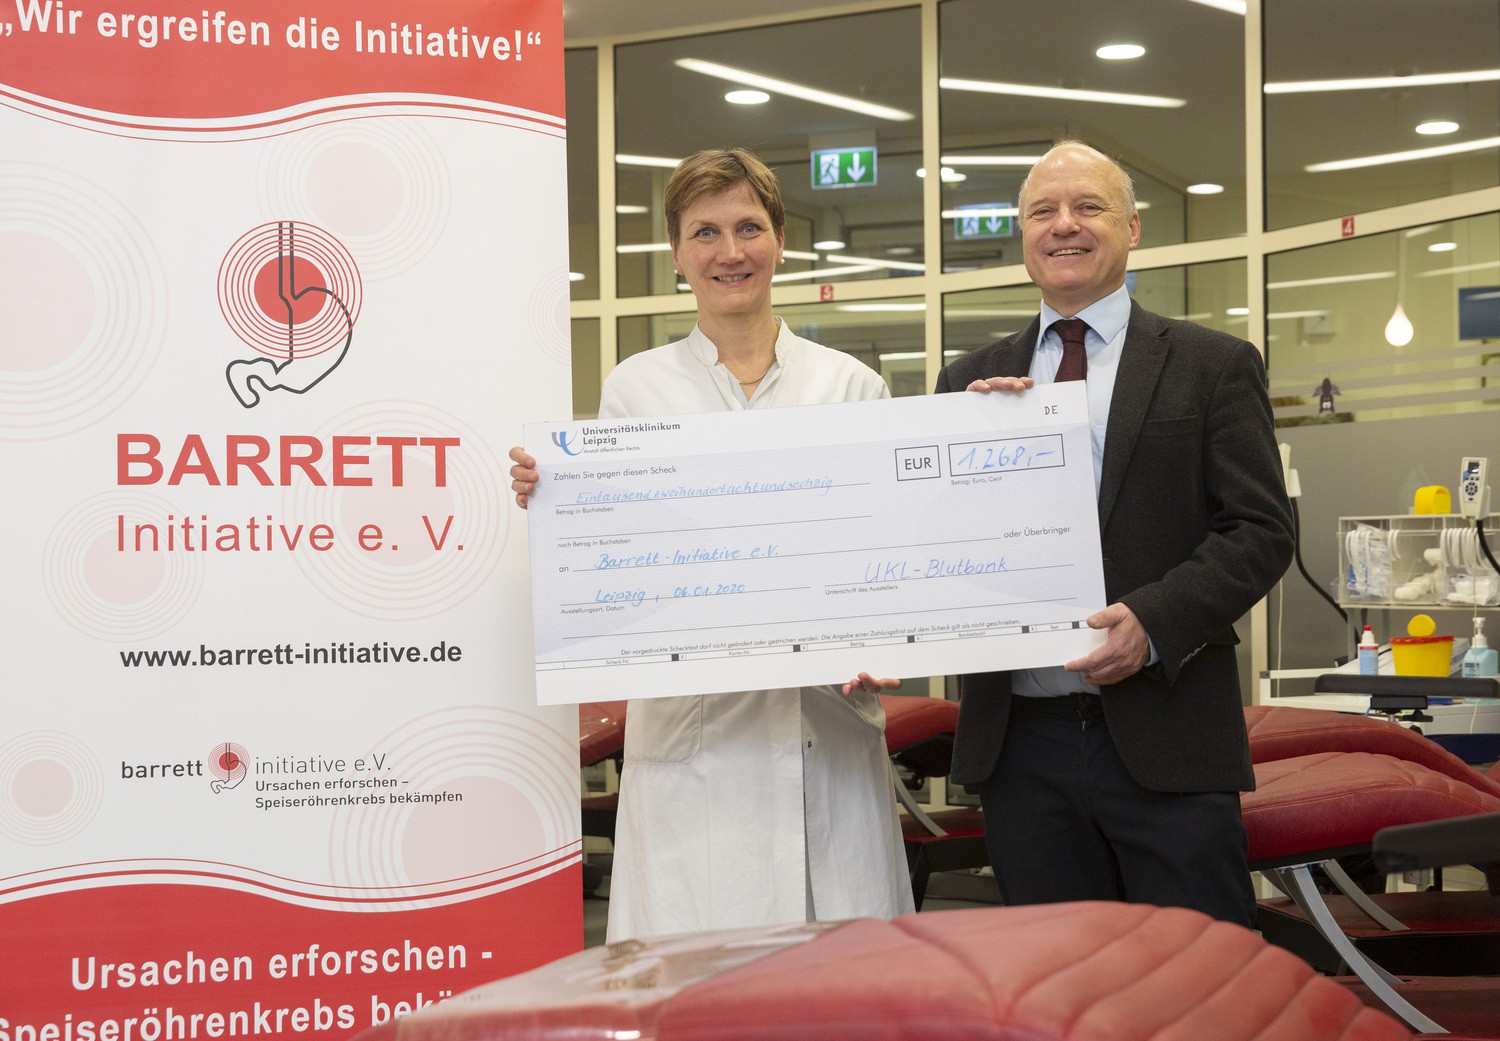 Freuen sich über den Erfolg der Aktion: Prof. Ines Gockel, Vorsitzende des Vereins "Barrett-Initiative e. V.“ und Prof. Dr. Reinhard Henschler, Direktor des Instituts für Transfusionsmedizin, bei der Scheck-Übergabe in der UKL-Blutbank